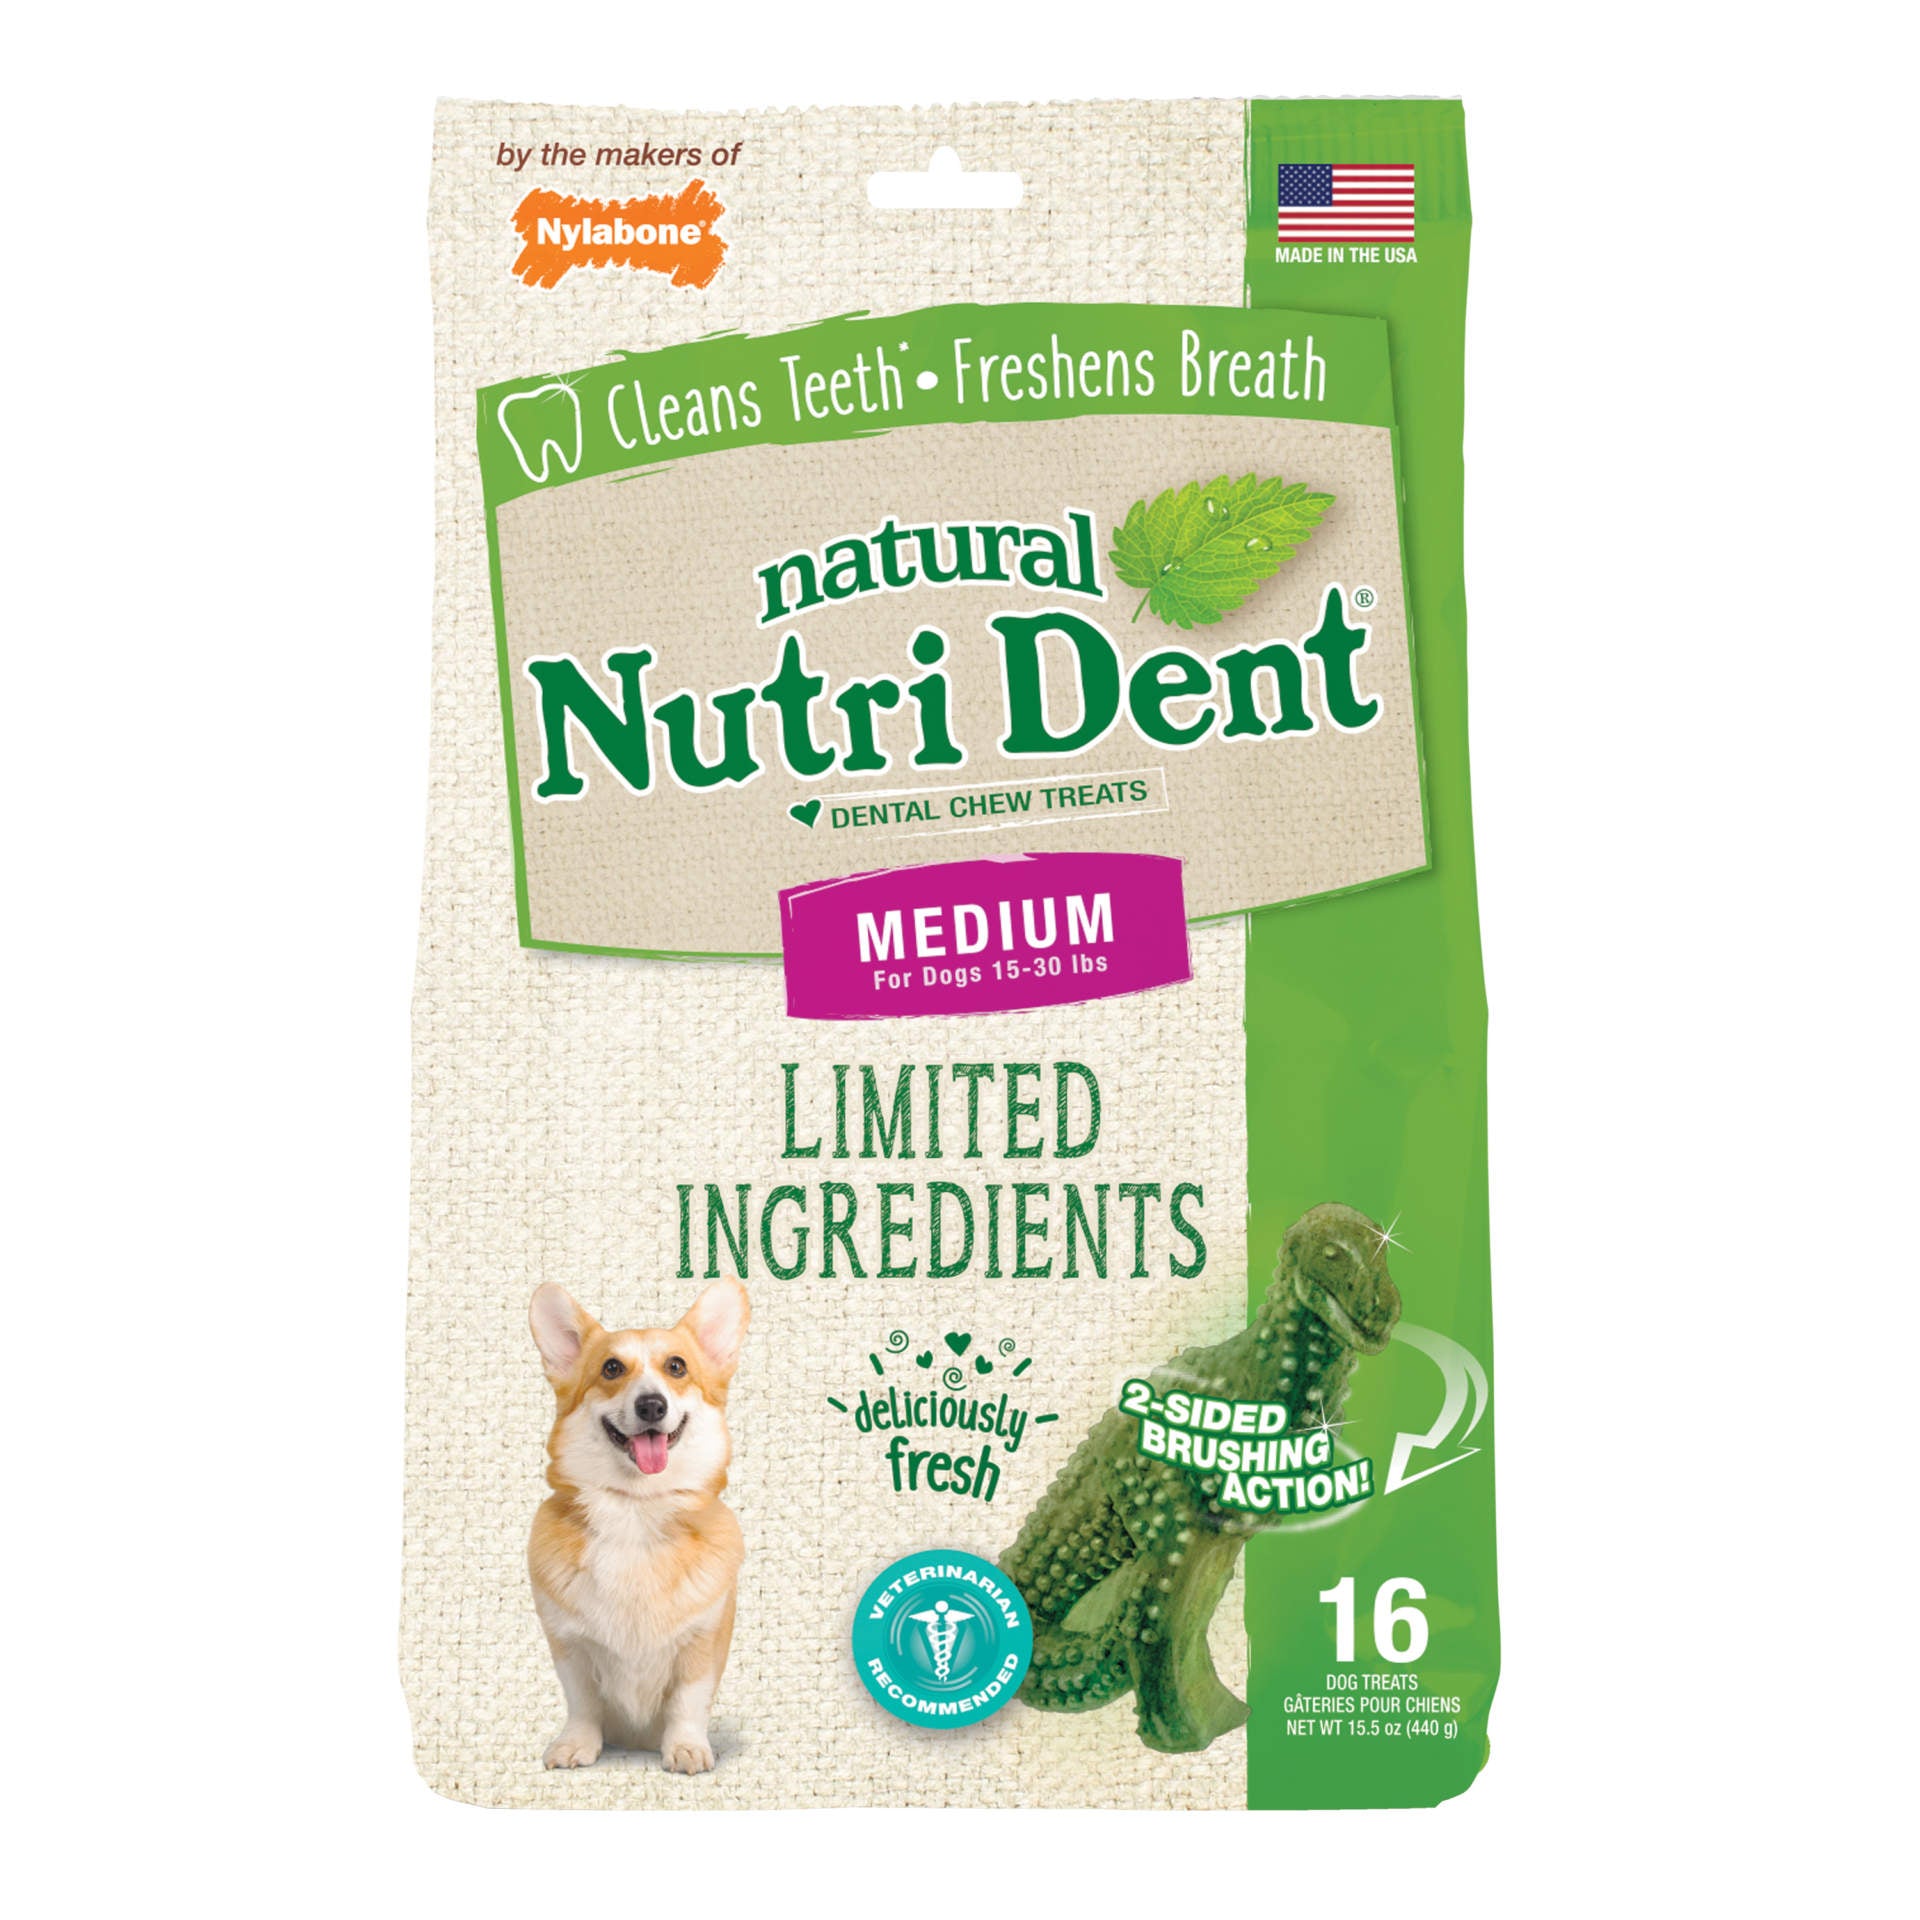 Nylabone Nutri Dent Limited Ingredient Dental Chews Fresh Breath T-Rex